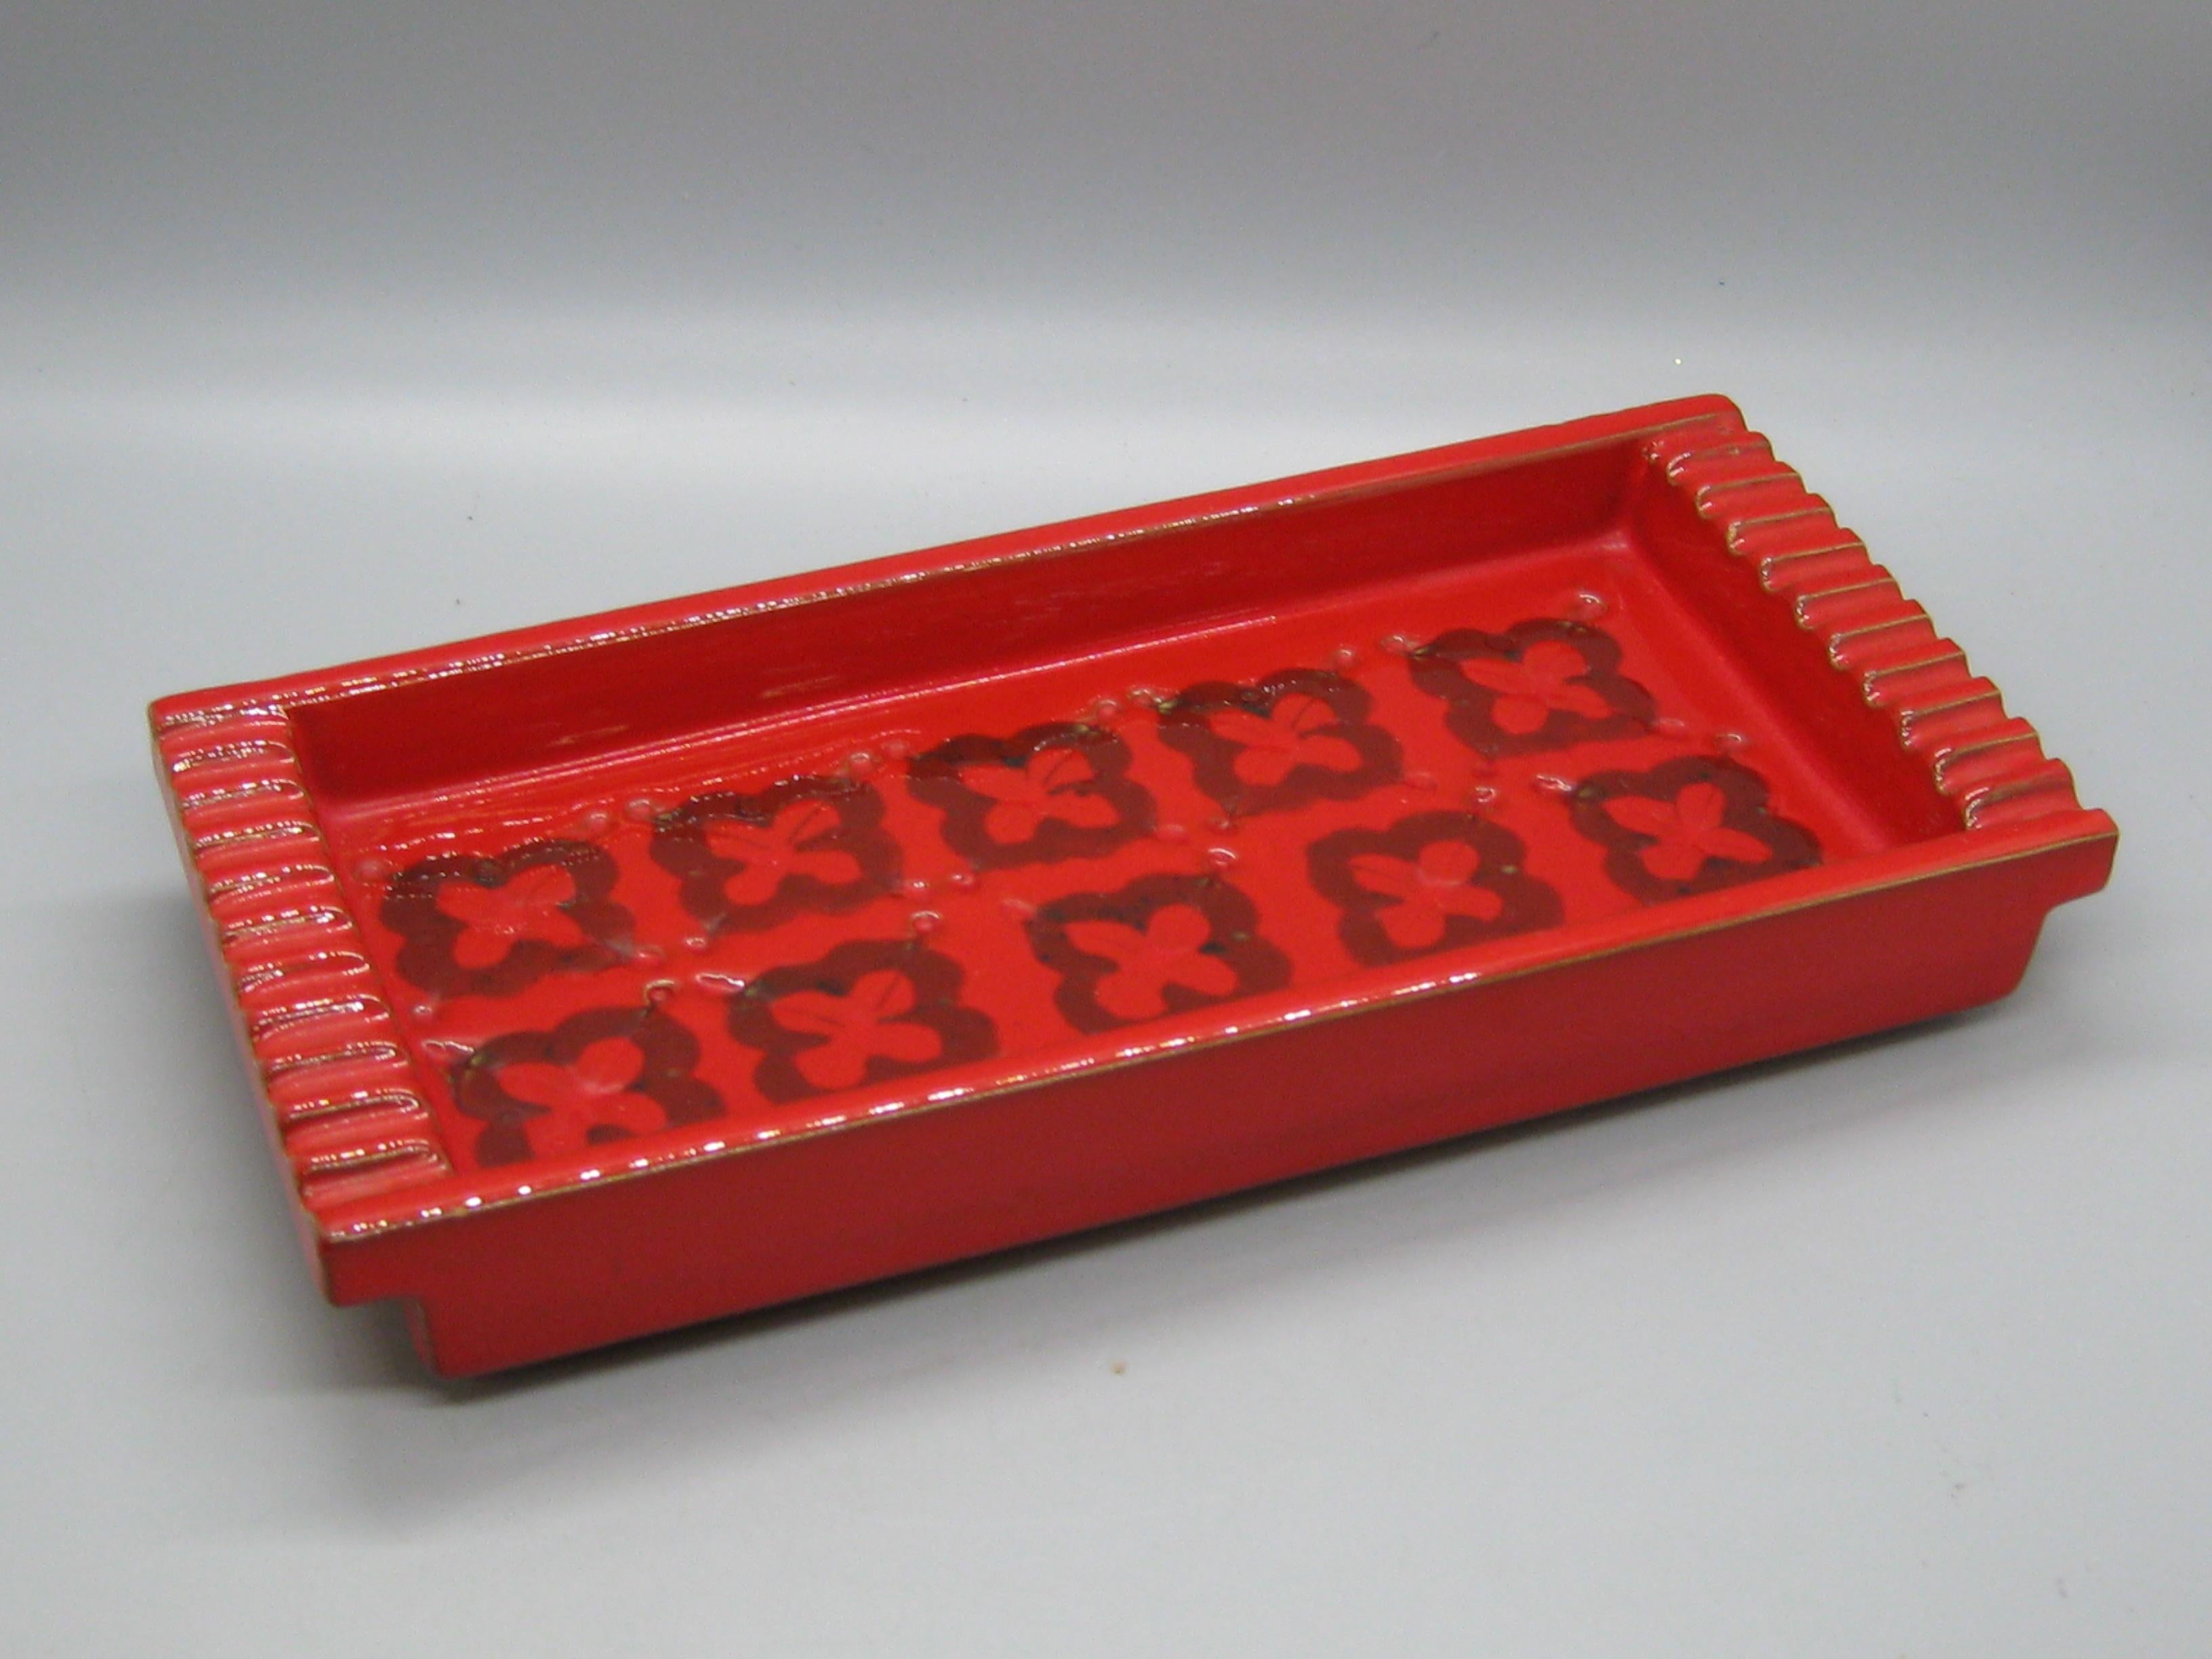 Wunderschöner roter Aschenbecher aus Keramik/Töpferware von Aldo Londi Bitossi, ca. 1960er Jahre. Sie wurde in Italien hergestellt und ist auf der Unterseite signiert. Scheint nie benutzt worden zu sein. Großartige abstrakte Form und Design.